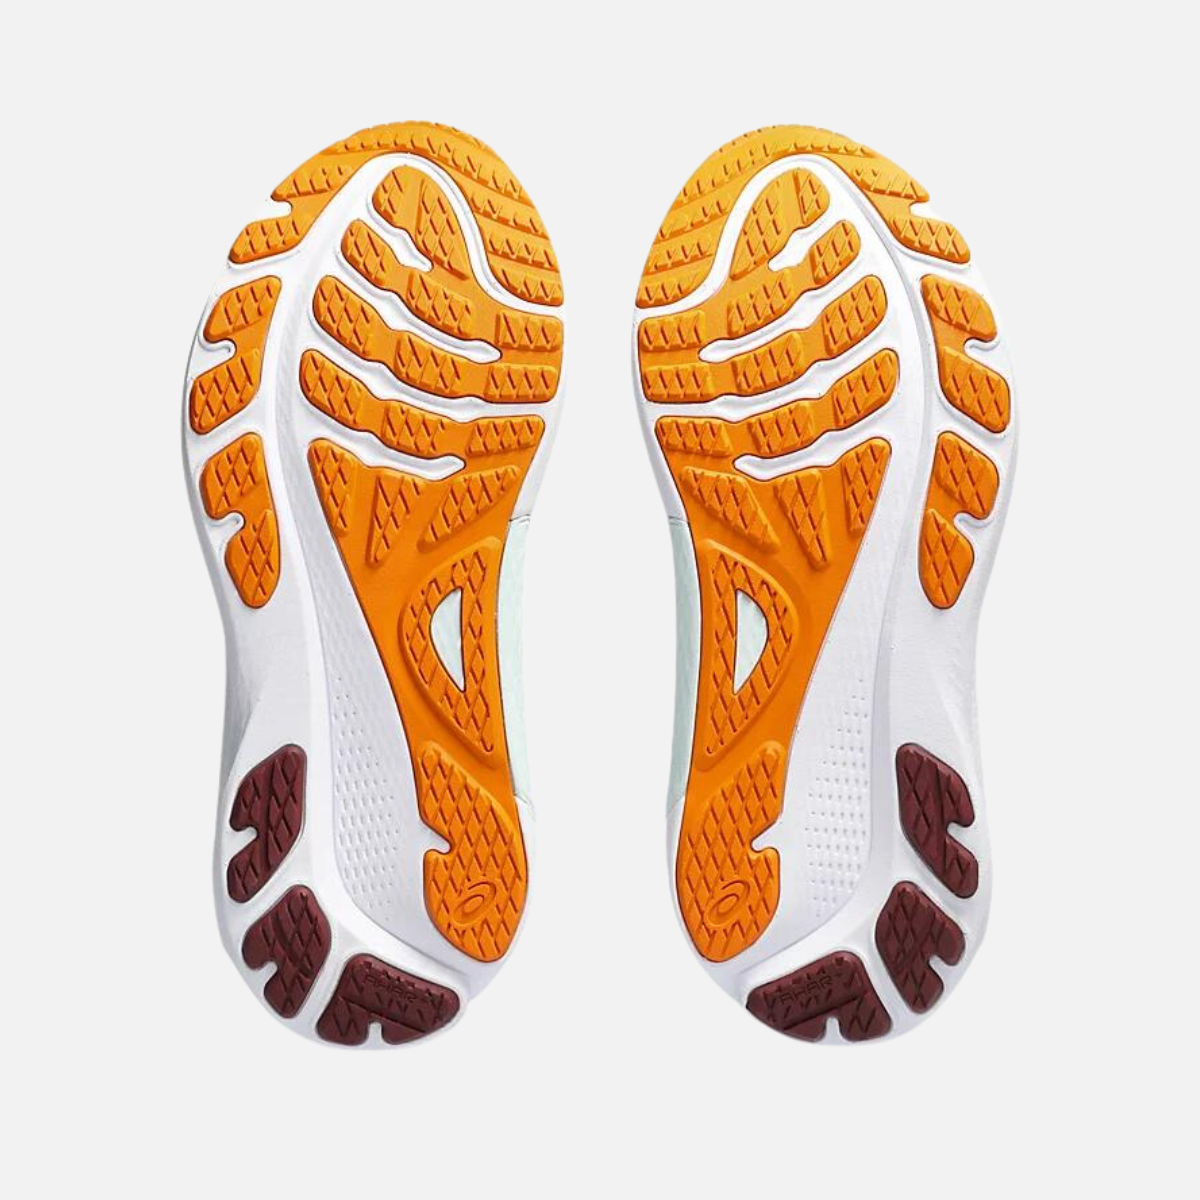 Asics GEL-KAYANO 30 Men's Running Shoes - Foggy Teal/Bright Orange